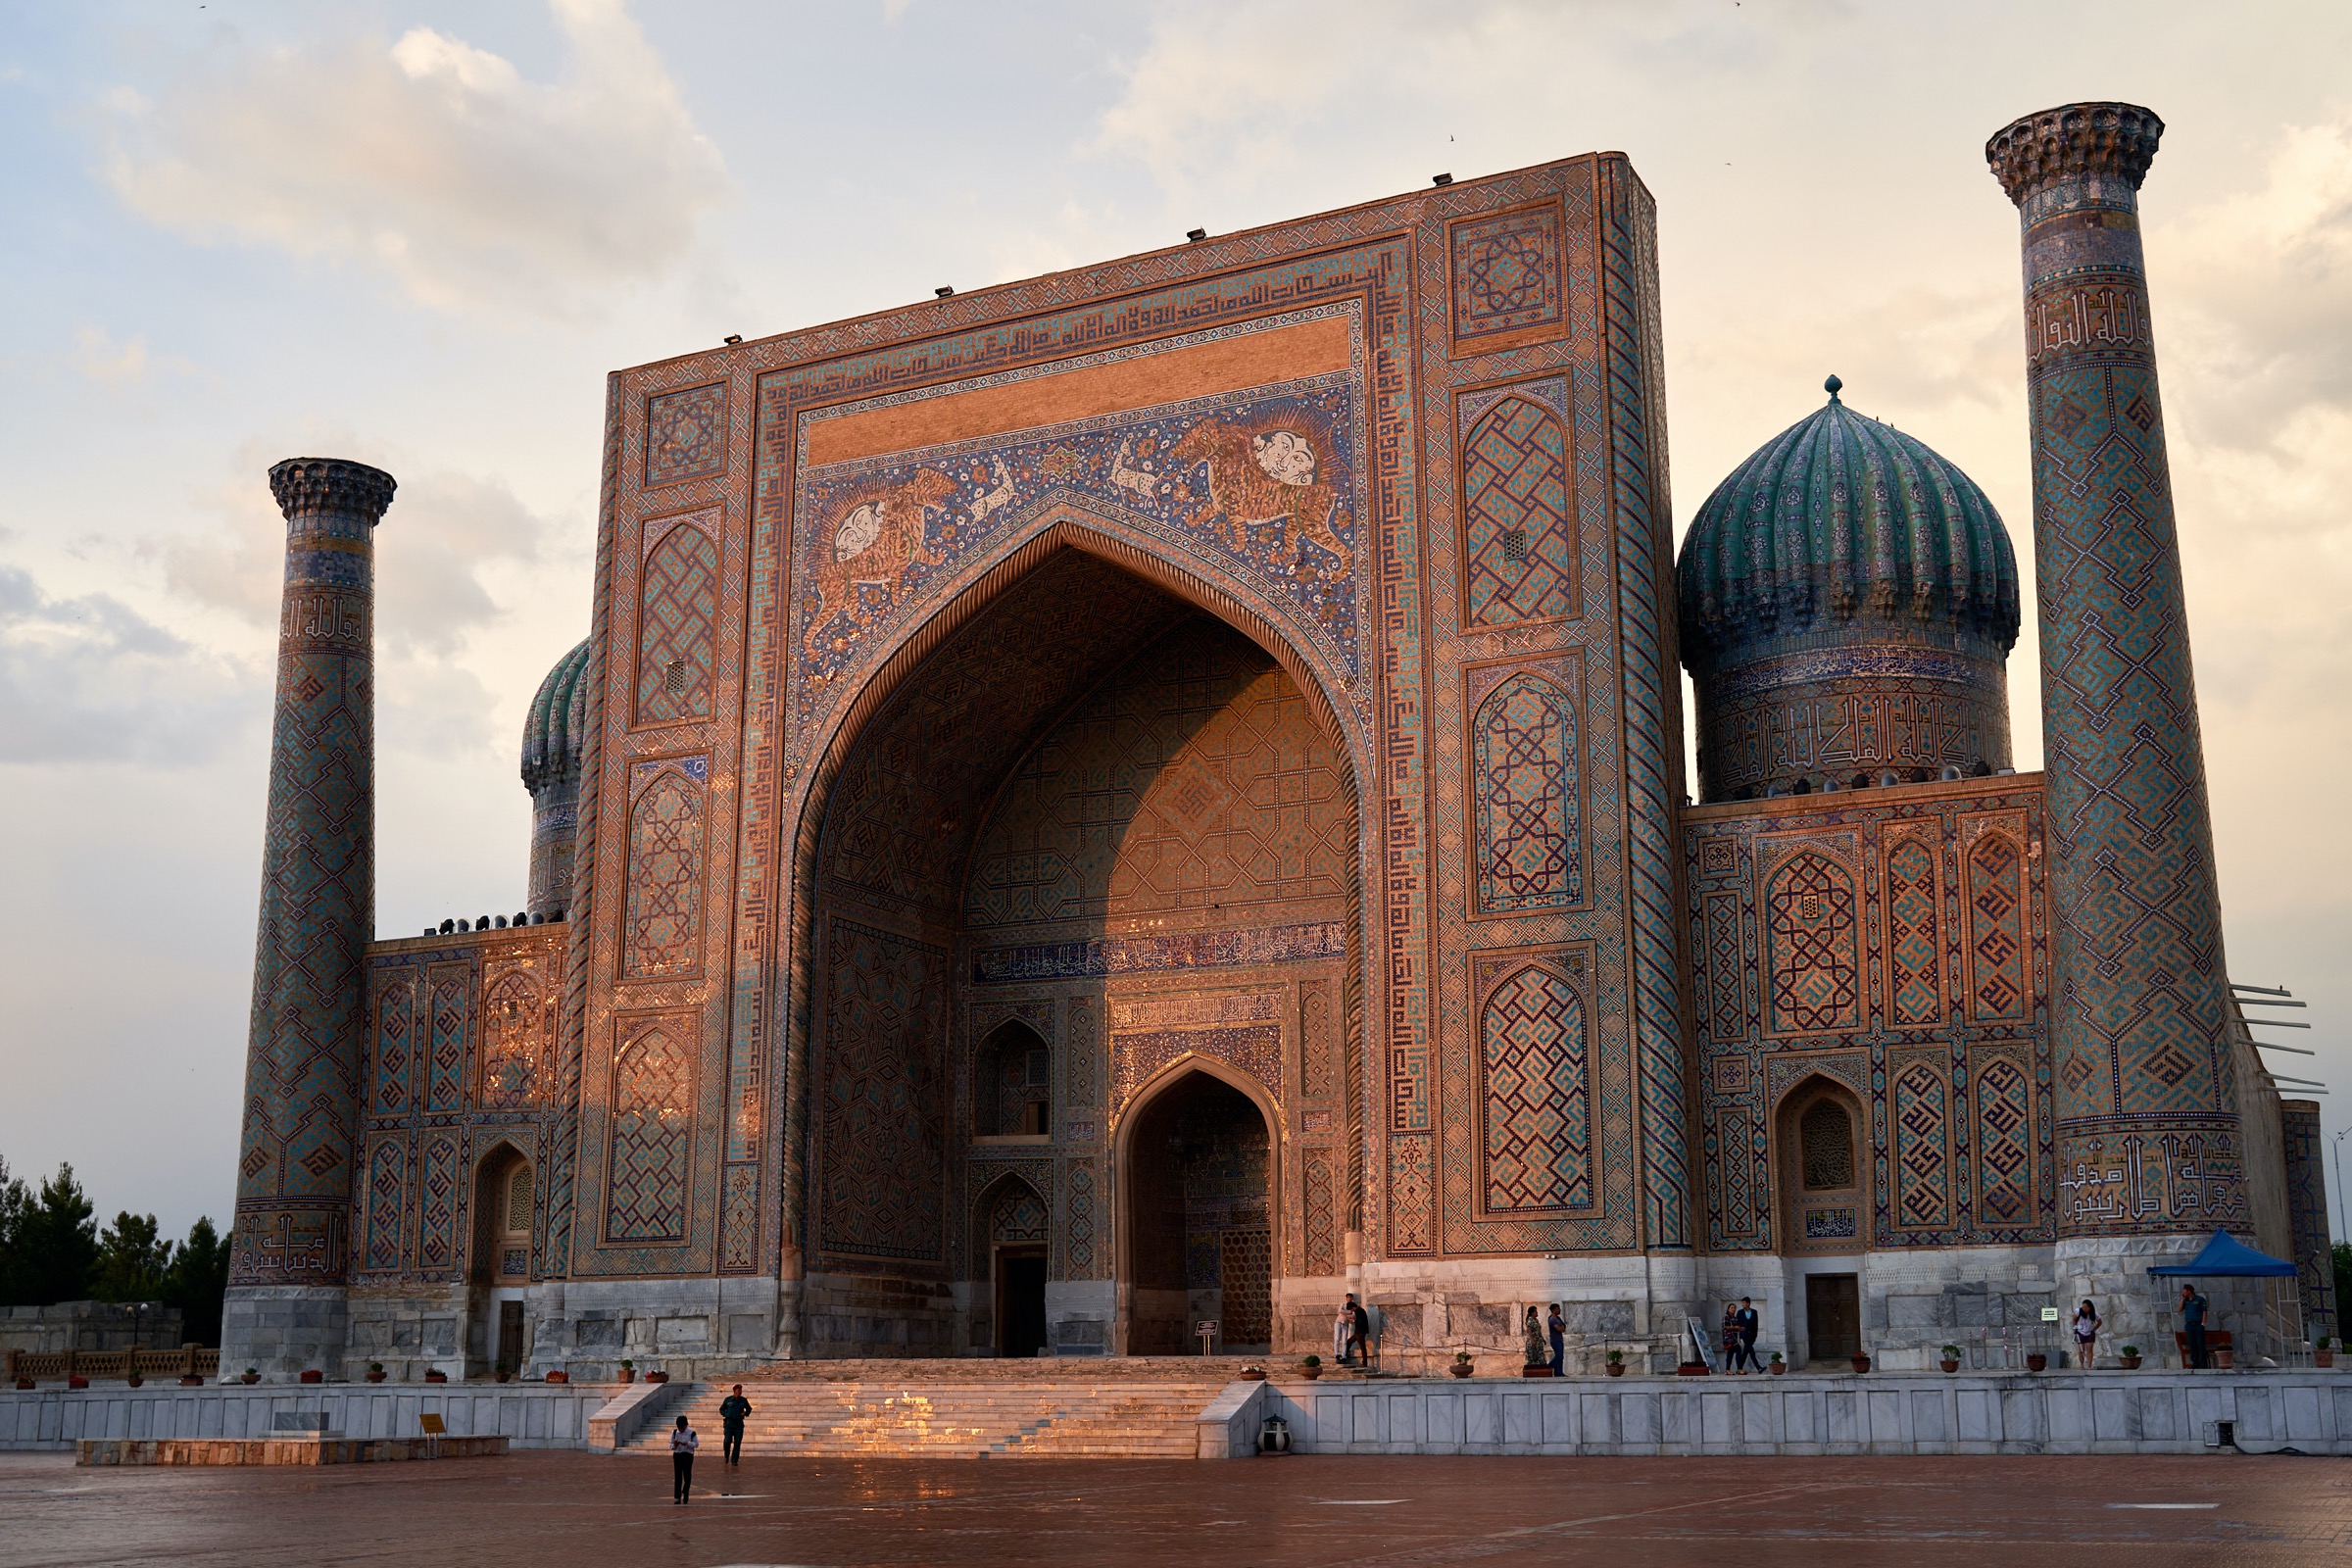 Tilya-Kori Madrasa in the Silk Road city of Samarkand, Uzbekistan. (Yam G-Jun)